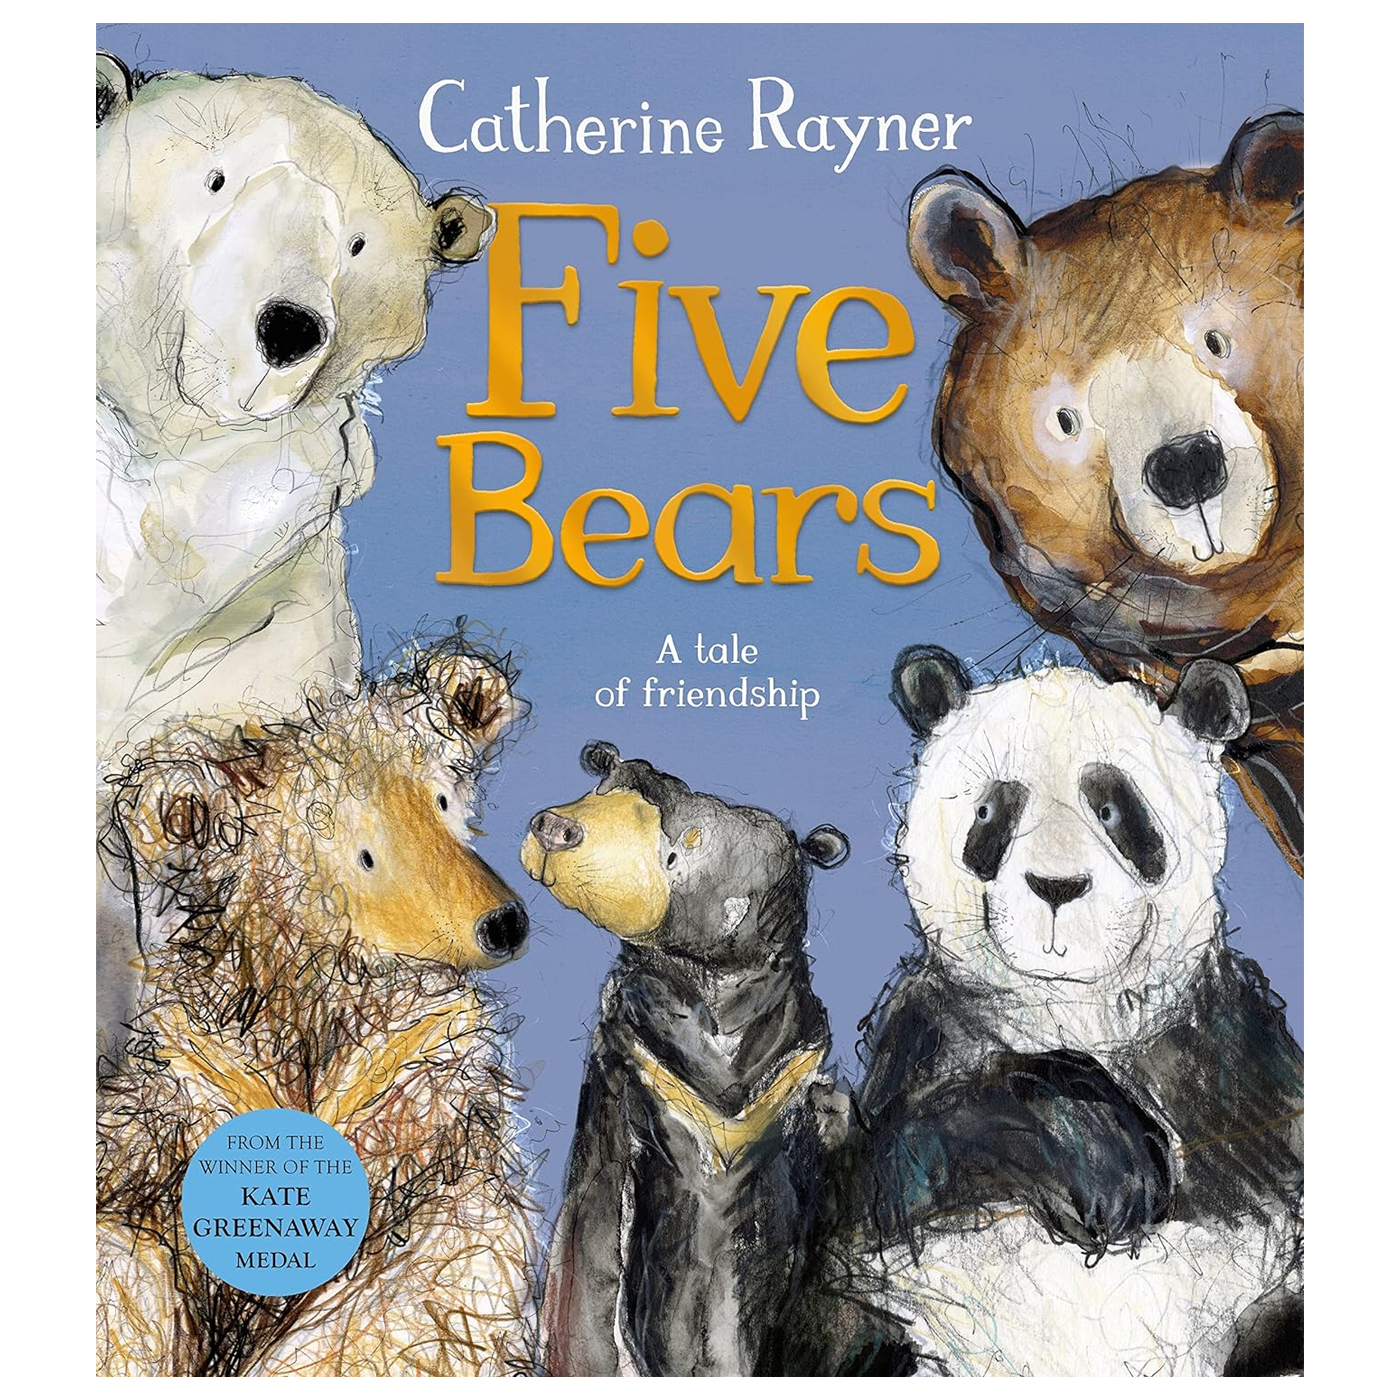  Five Bears: A Tale of Friendship